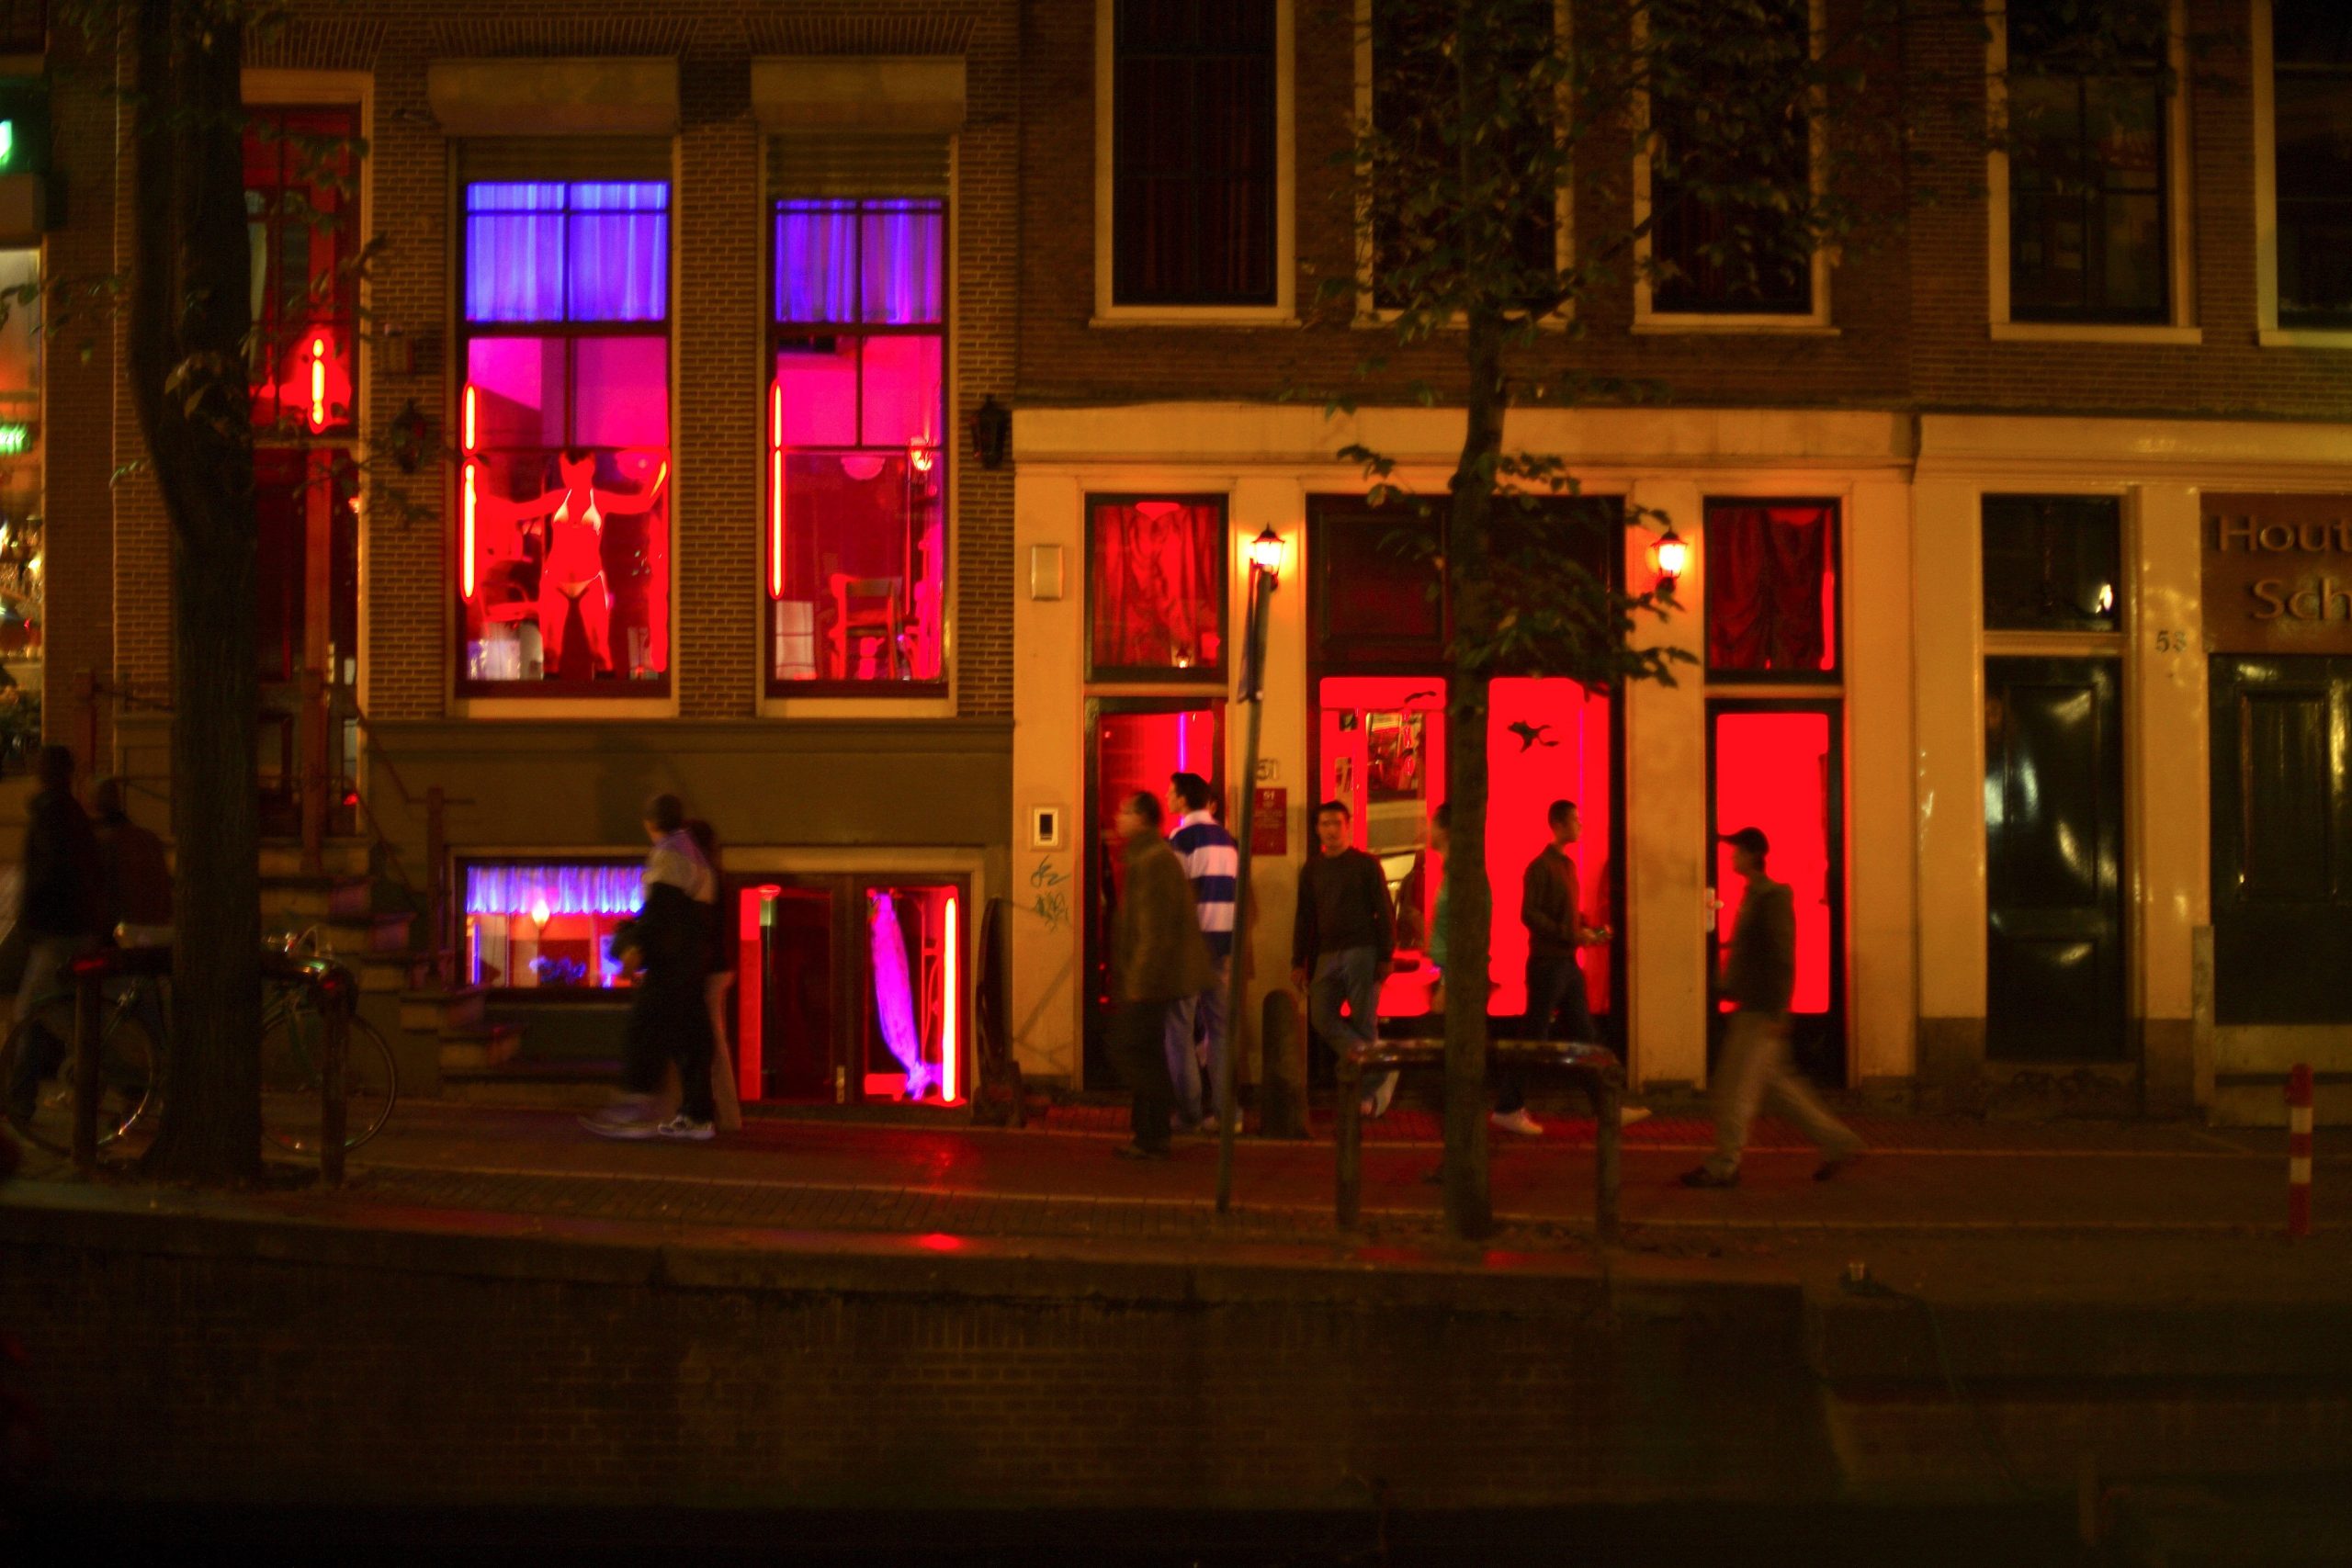 amsterdamski izlozi prolazniici u kvartu crveni fenjeri prostitutke u izlozima